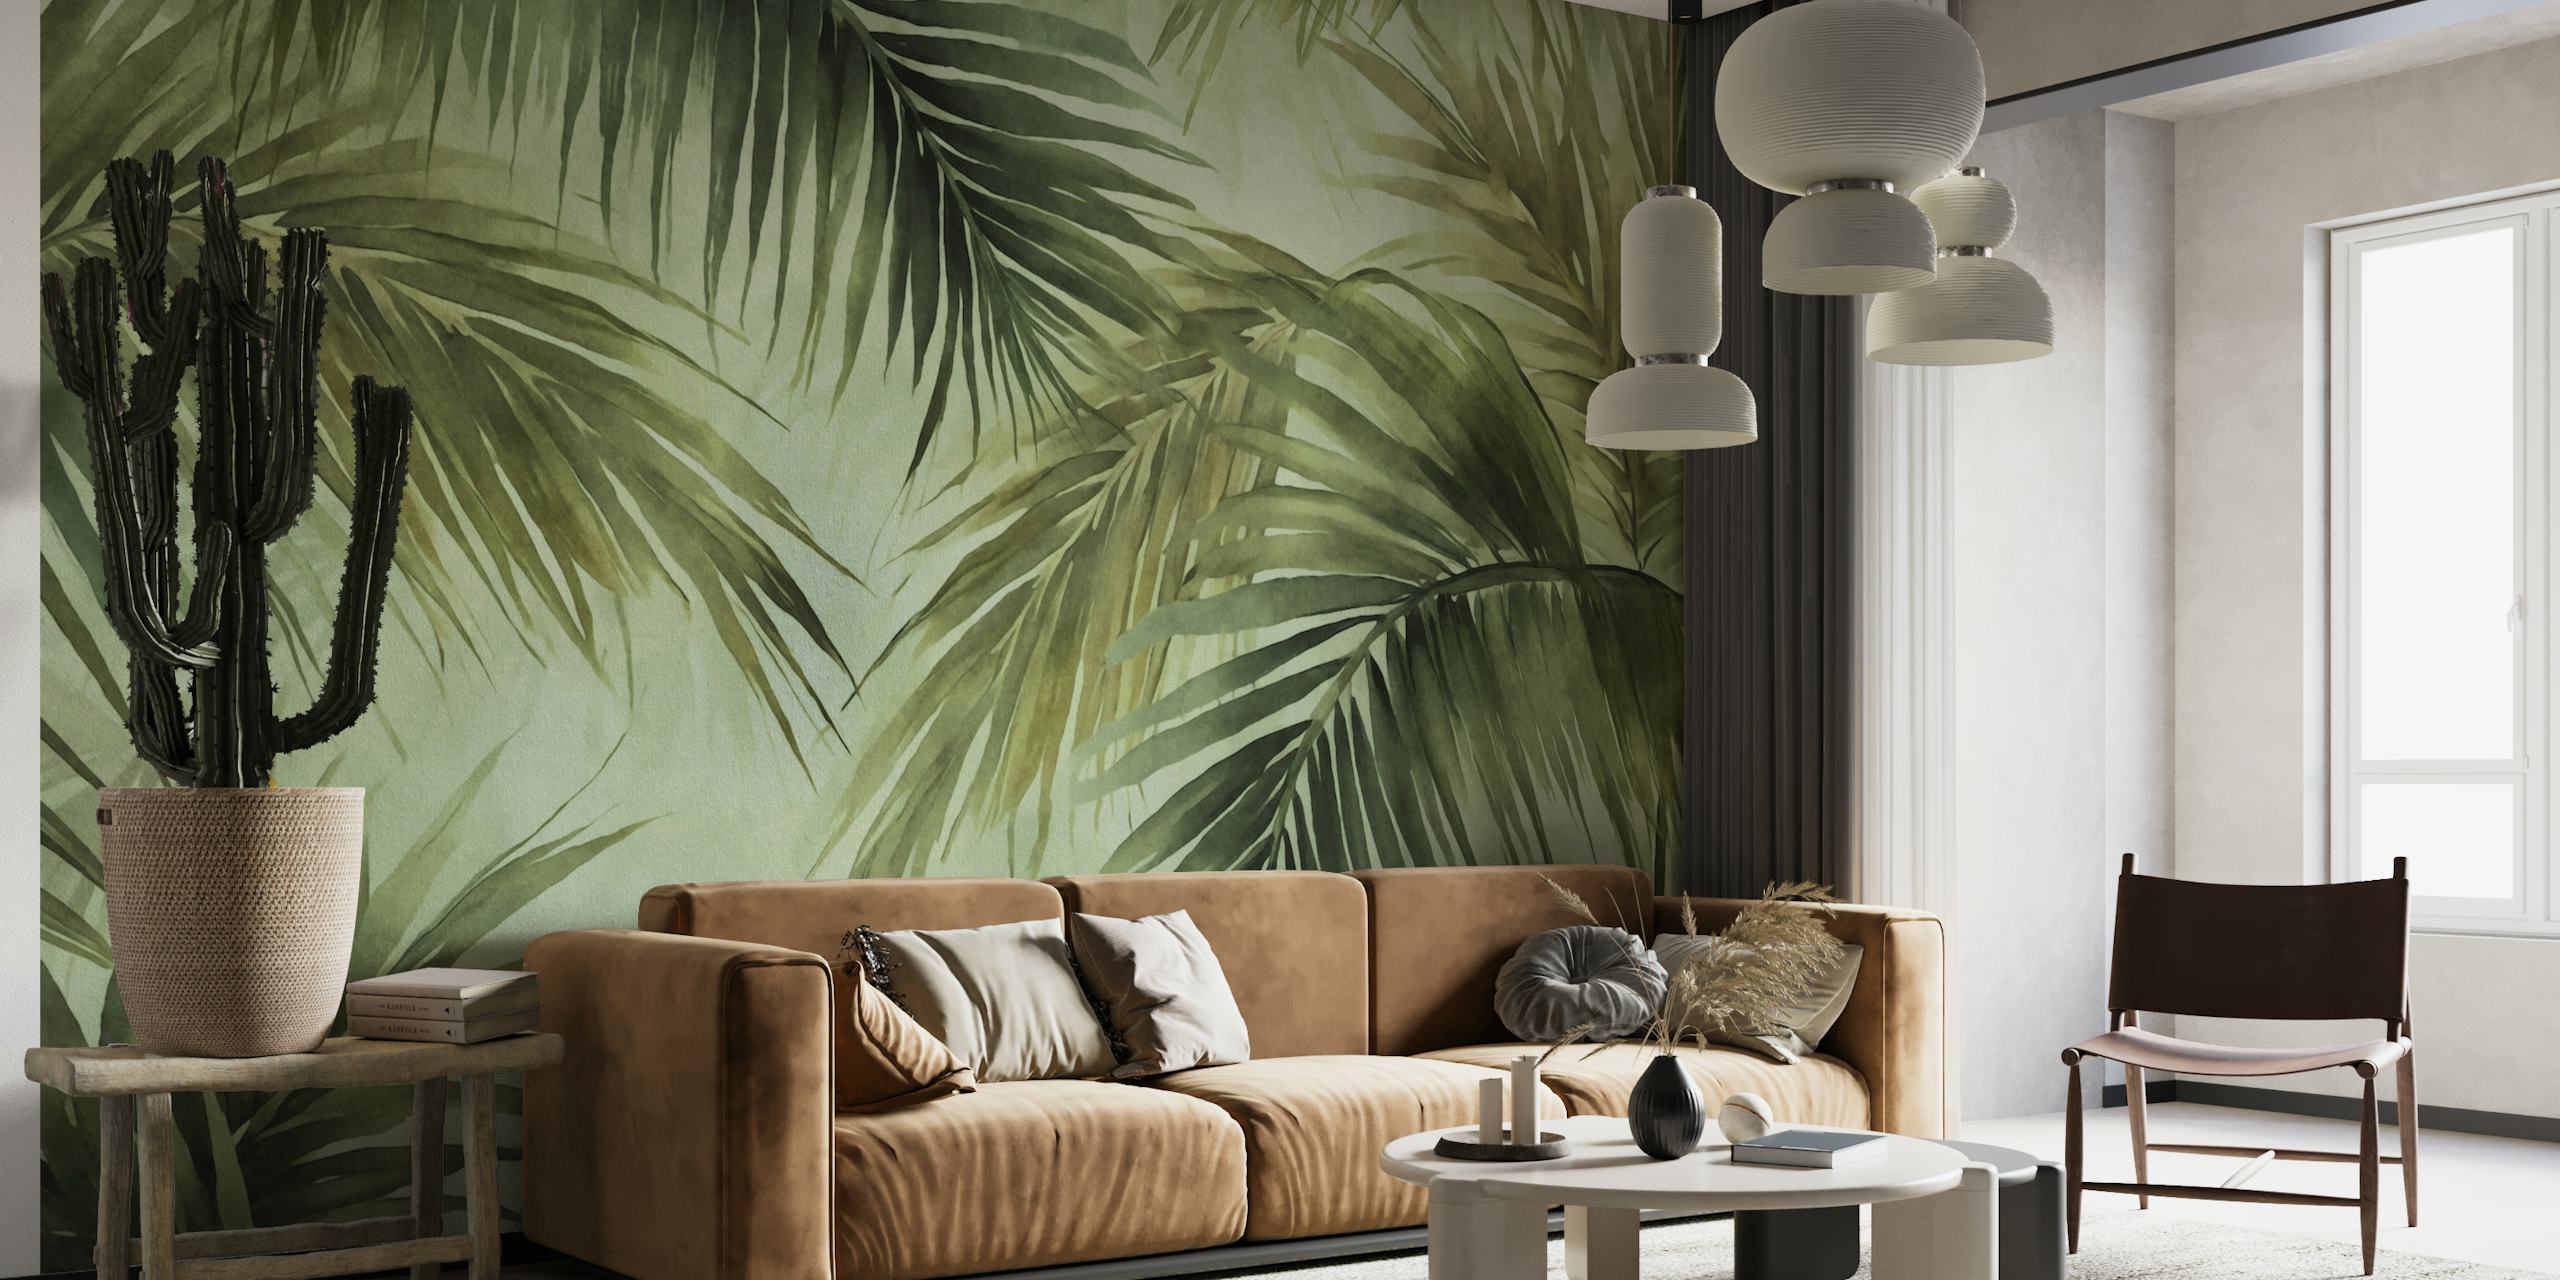 Mural de hojas de palma en acuarela en tonos cambiantes, perfecto para crear un ambiente de isla tropical.